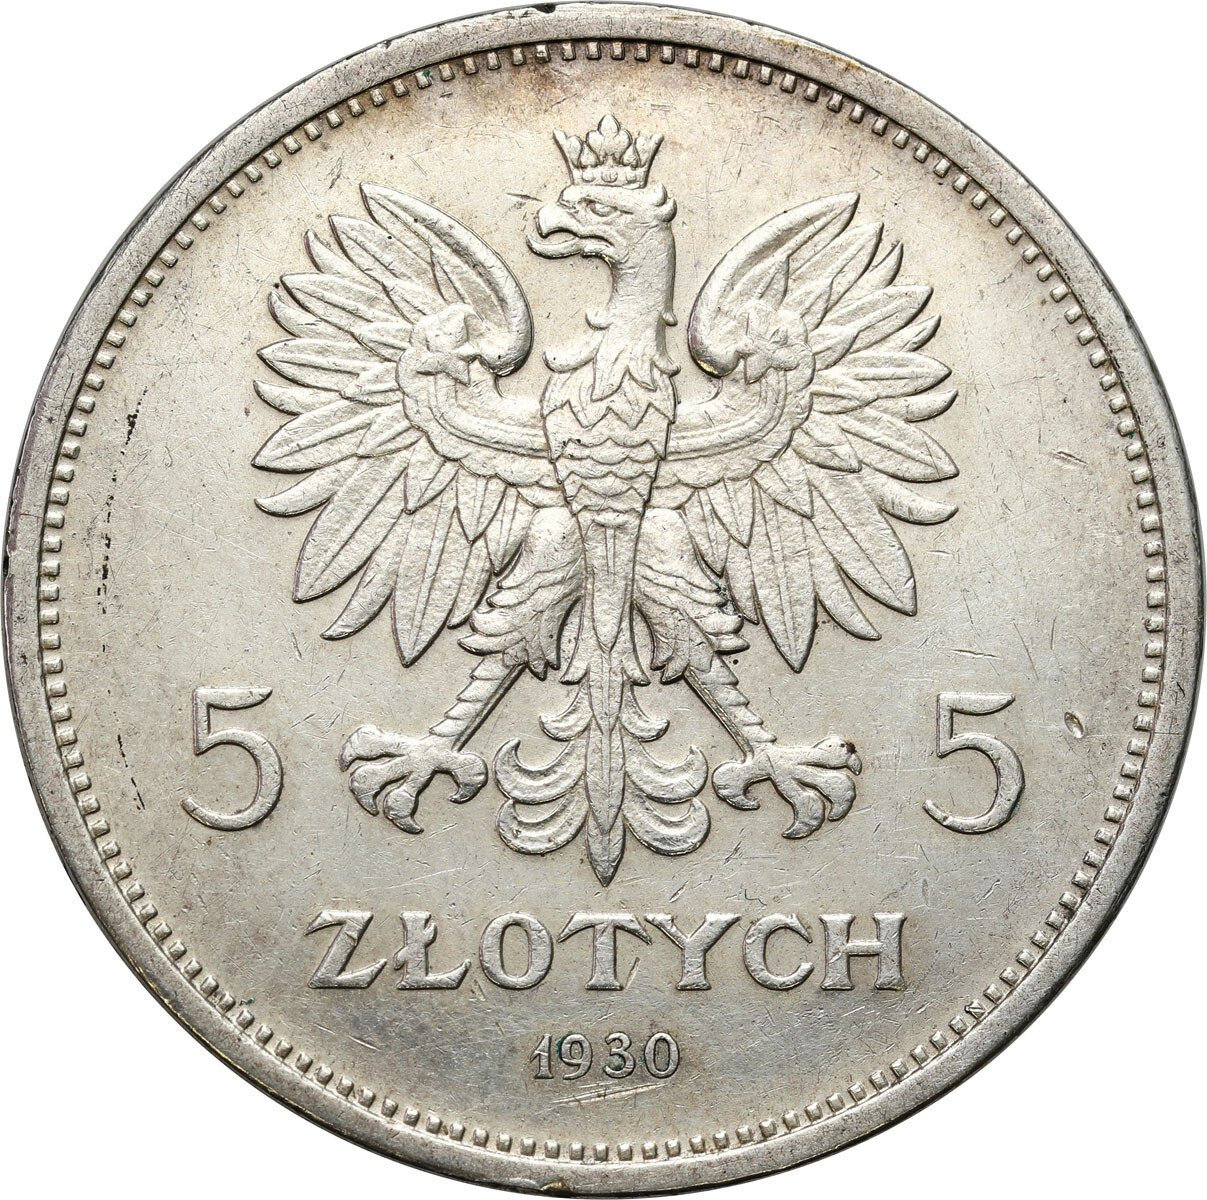  II. RP. 5 złotych 1930 Sztandar STEMPEL GŁĘBOKI - RZADKOŚĆ